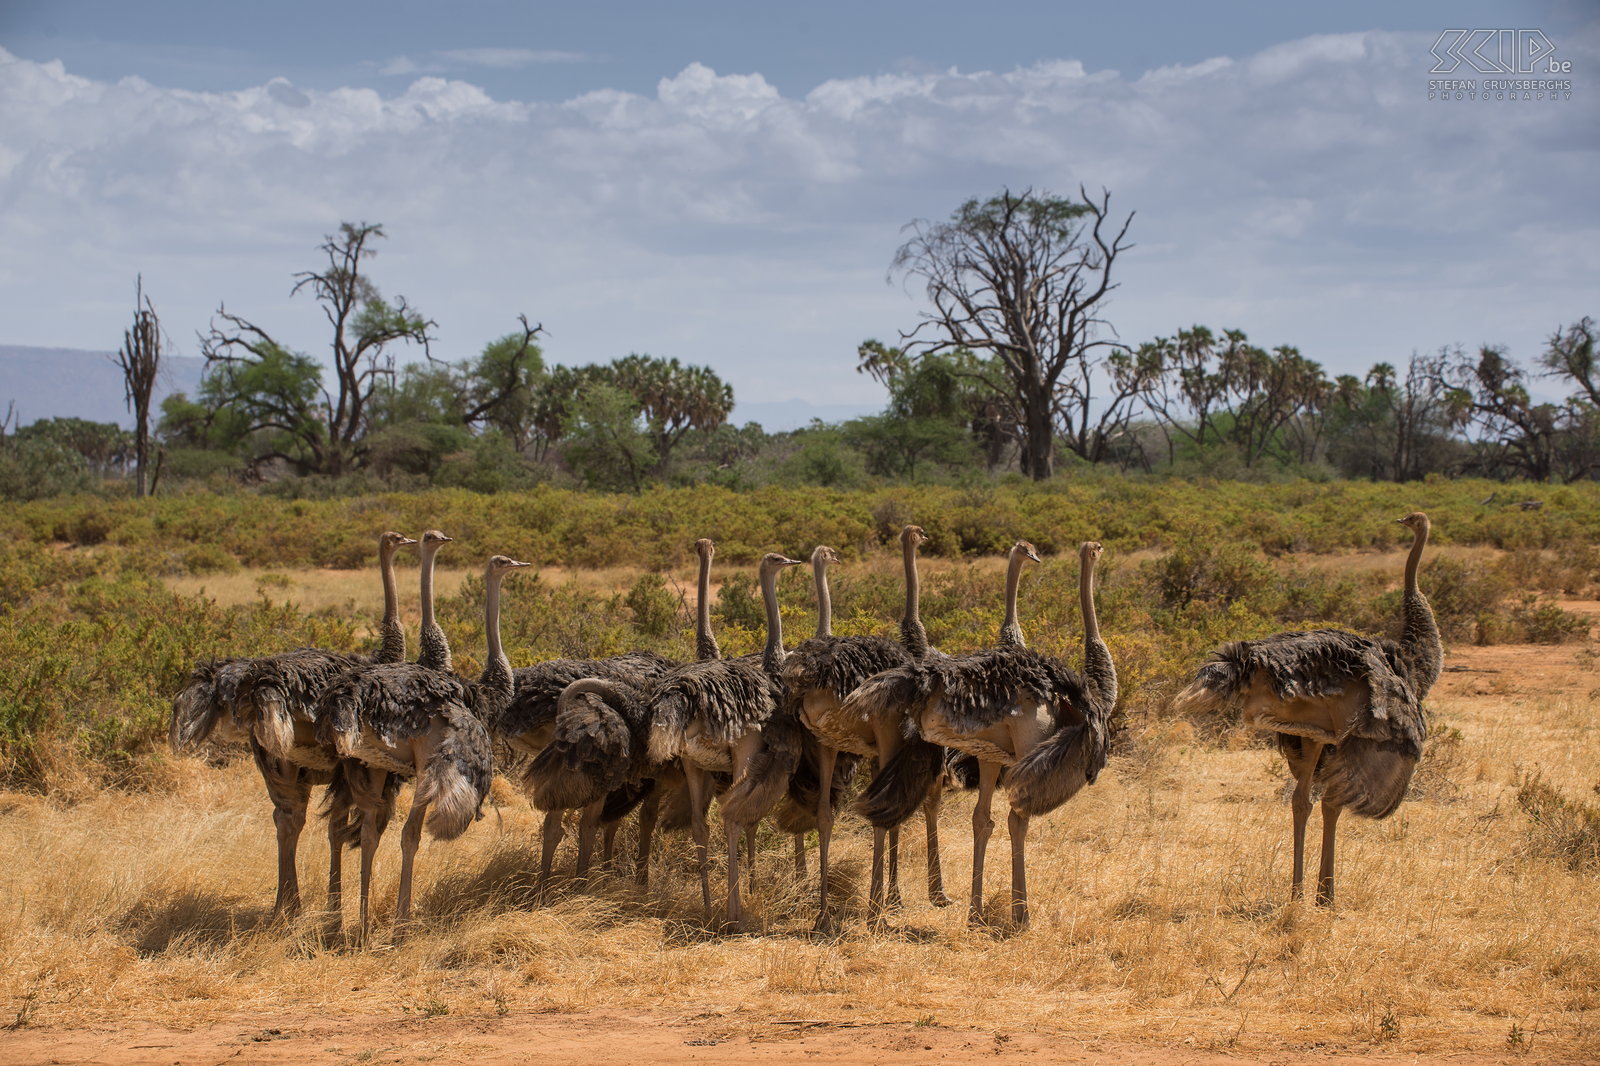 Samburu - Groep vrouwelijke struisvogels Een grote groep vrouwelijke Somalische struisvogels (Somali ostriche, Struthio camelus molybdophanes). Ze verschillen een beetje van andere struisvogels door hun grijs-blauwe nek en witte staartveren. De vrouwtjes zijn iets groter dan de mannetjes en hebben een bruin gevederte.<br />
 Stefan Cruysberghs